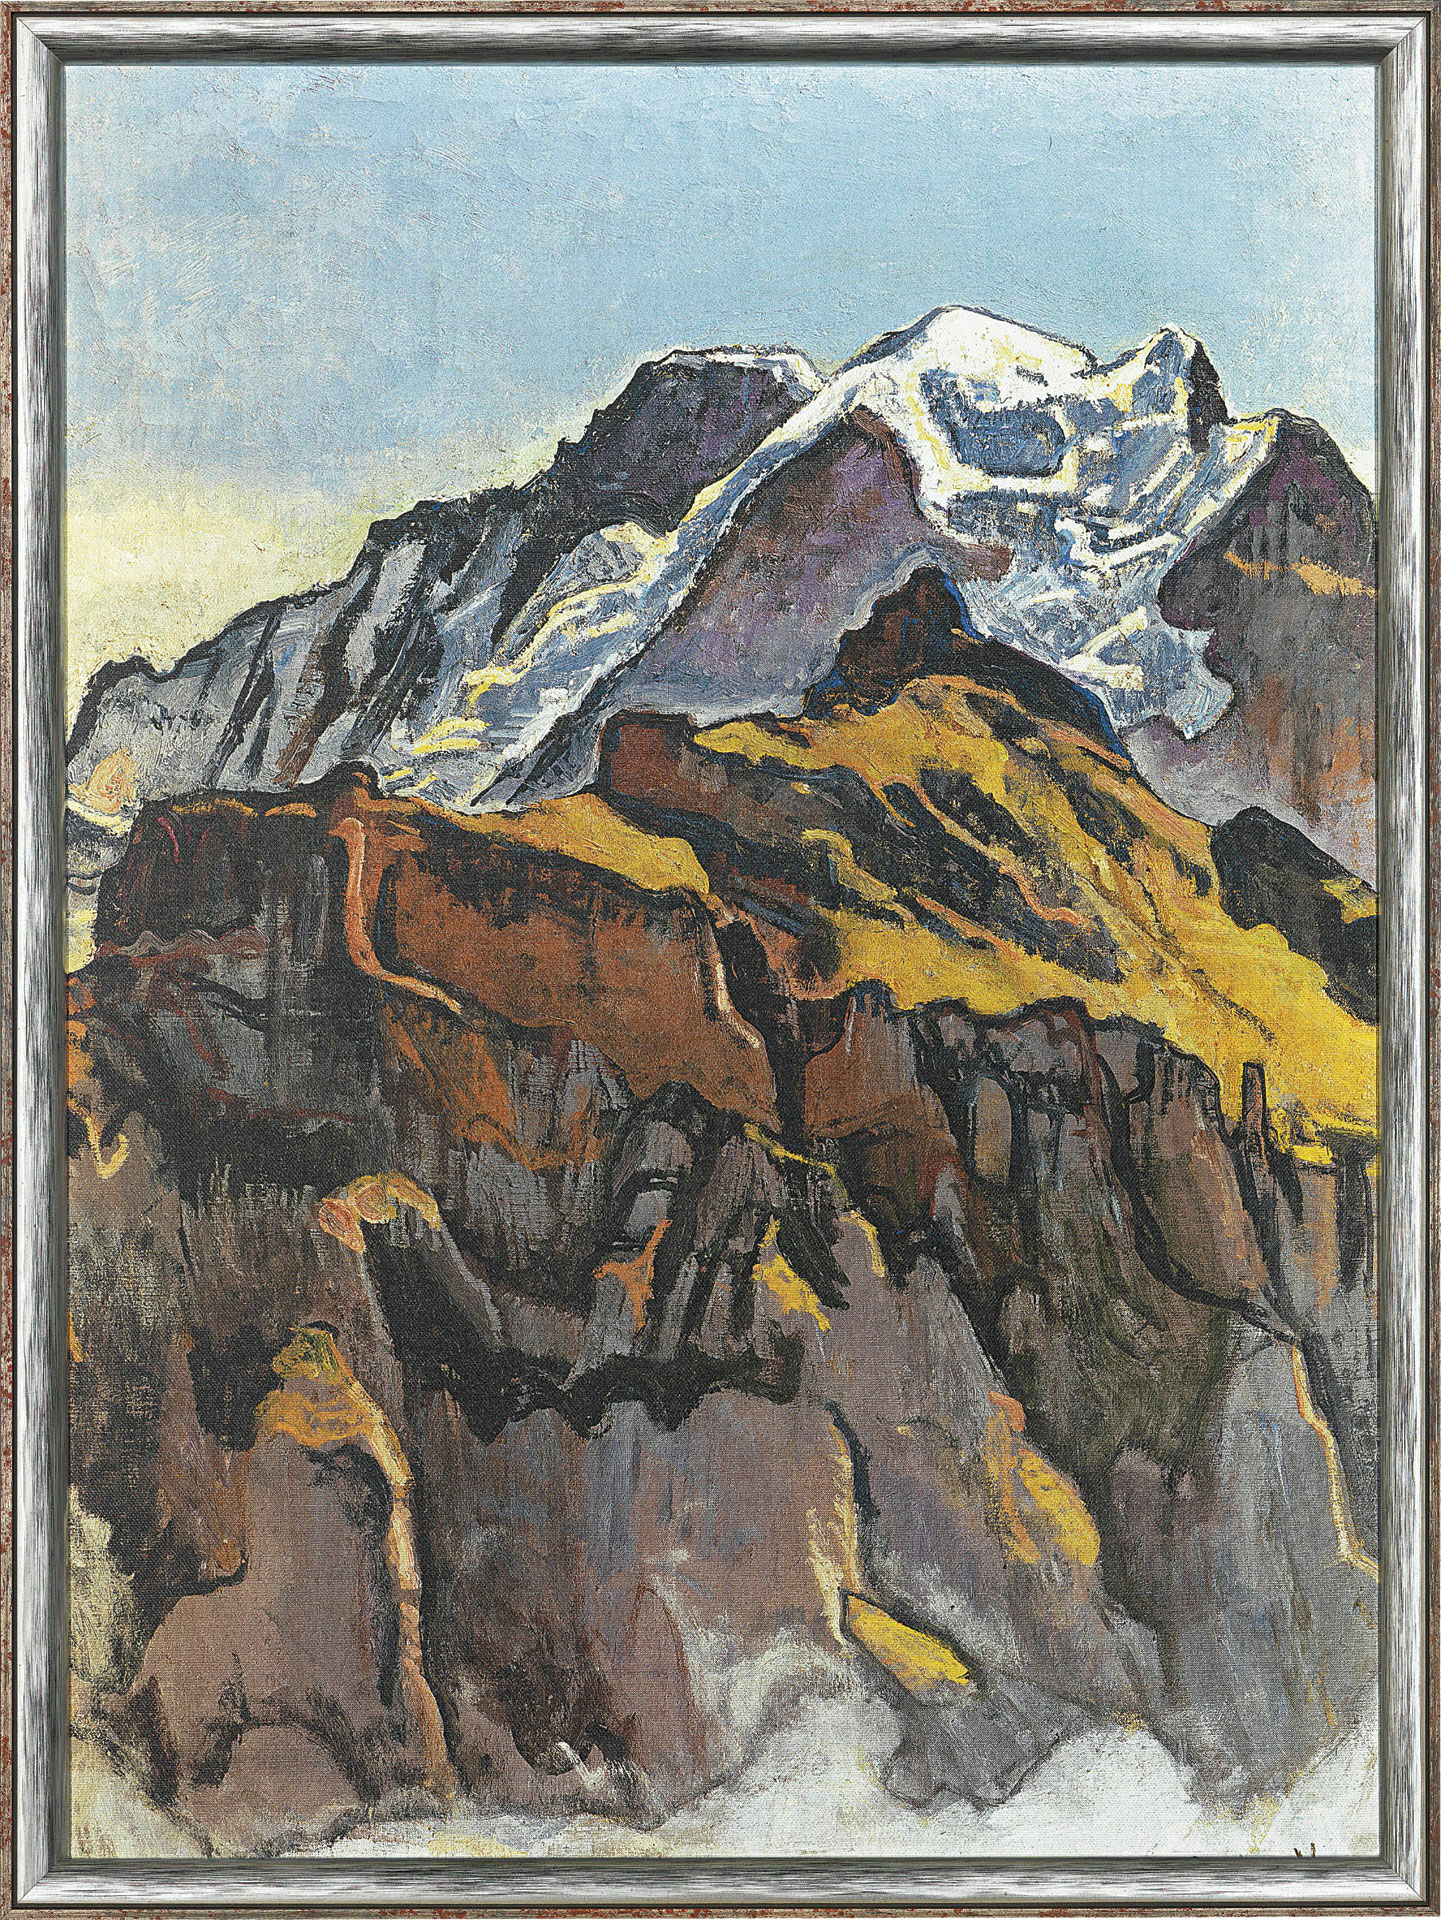 Tableau "La Jungfrau, vue de Mürren" (1911), encadré von Ferdinand Hodler